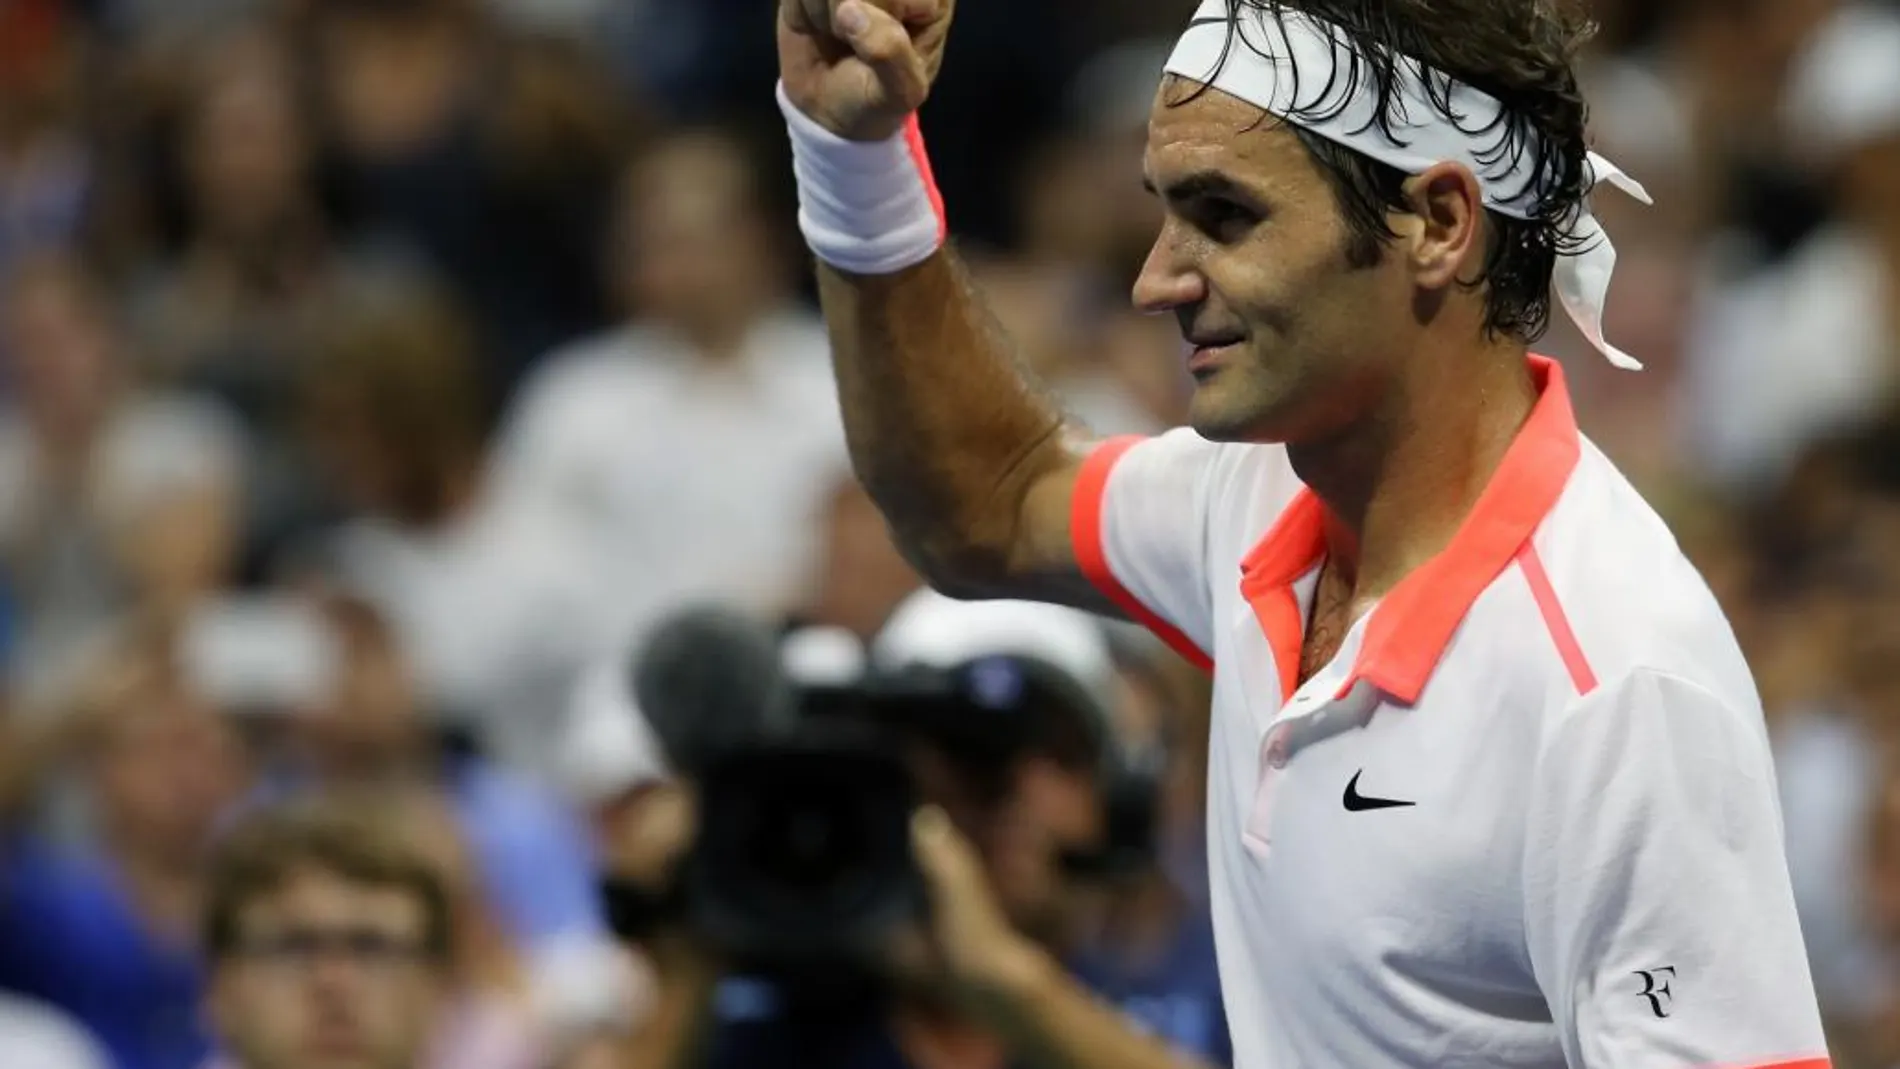 Federer se exhibió ante Gasquet y jugará las semifinales frente a Wawrinka